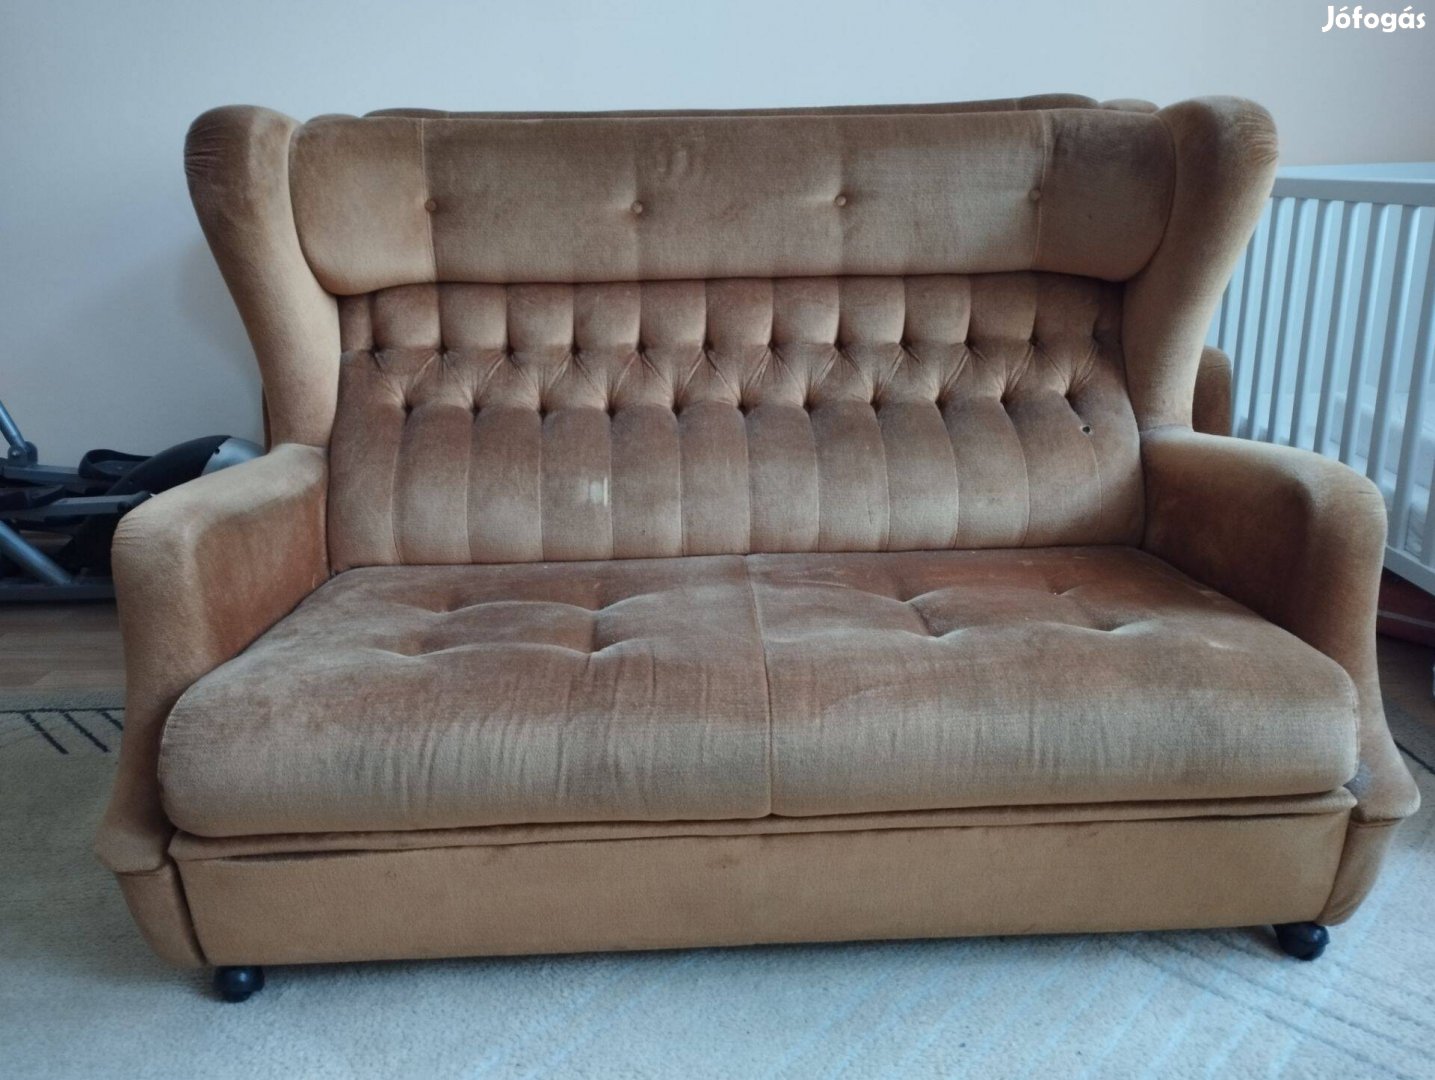 Ingyen kanapé, klasszikus, óarany színben